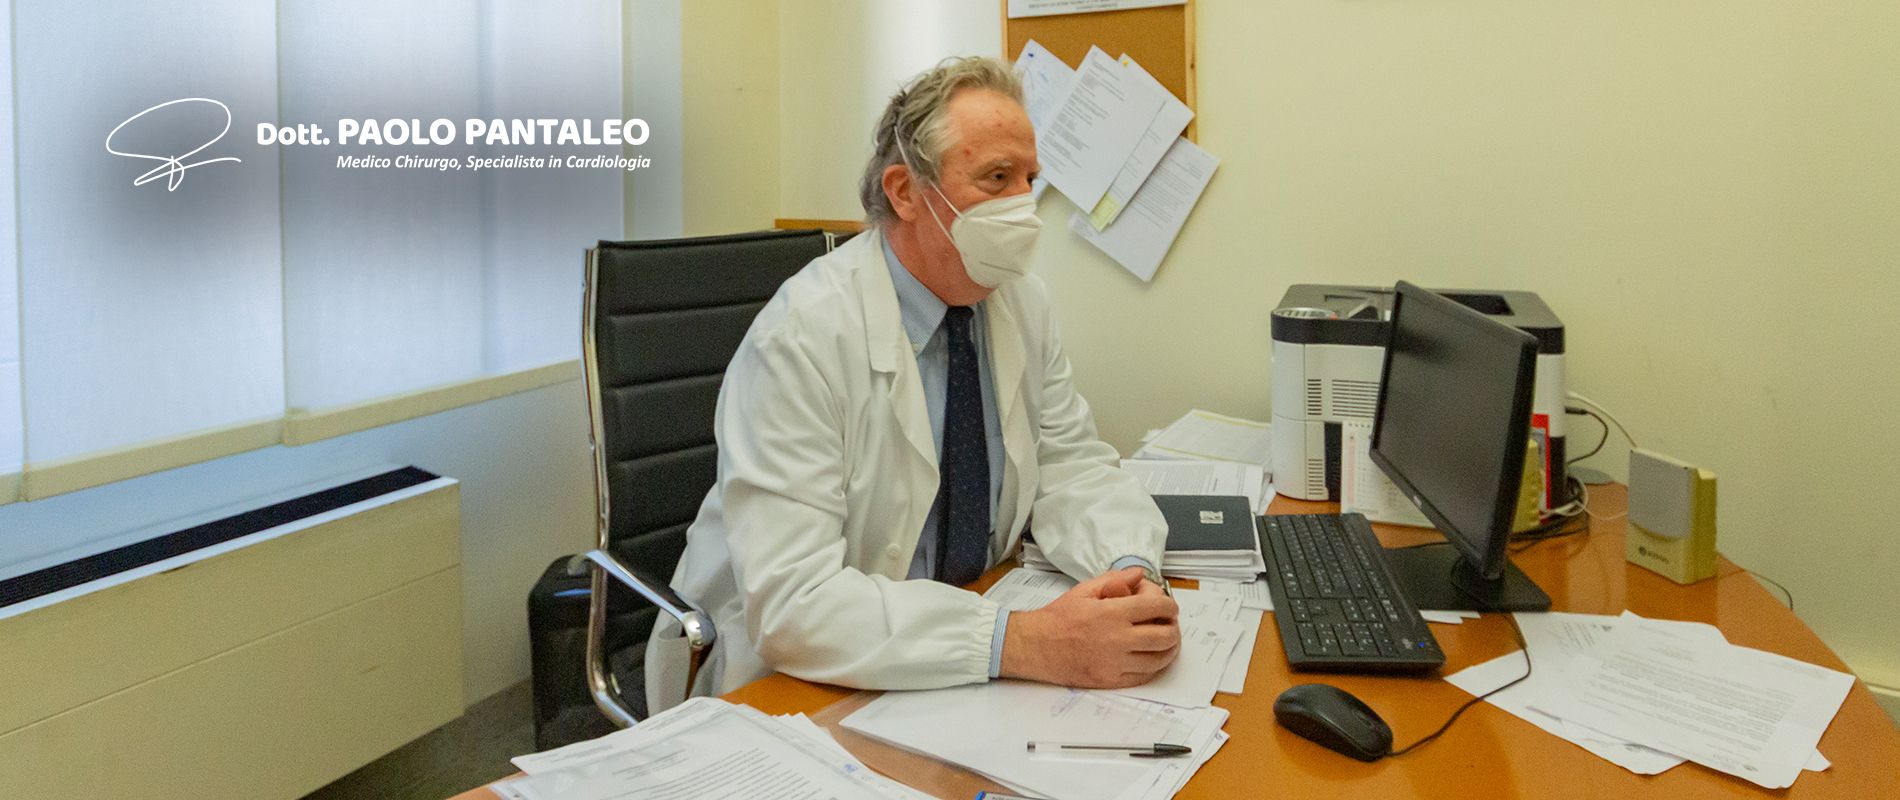 Dott. Paolo Pantaleo - Contatti